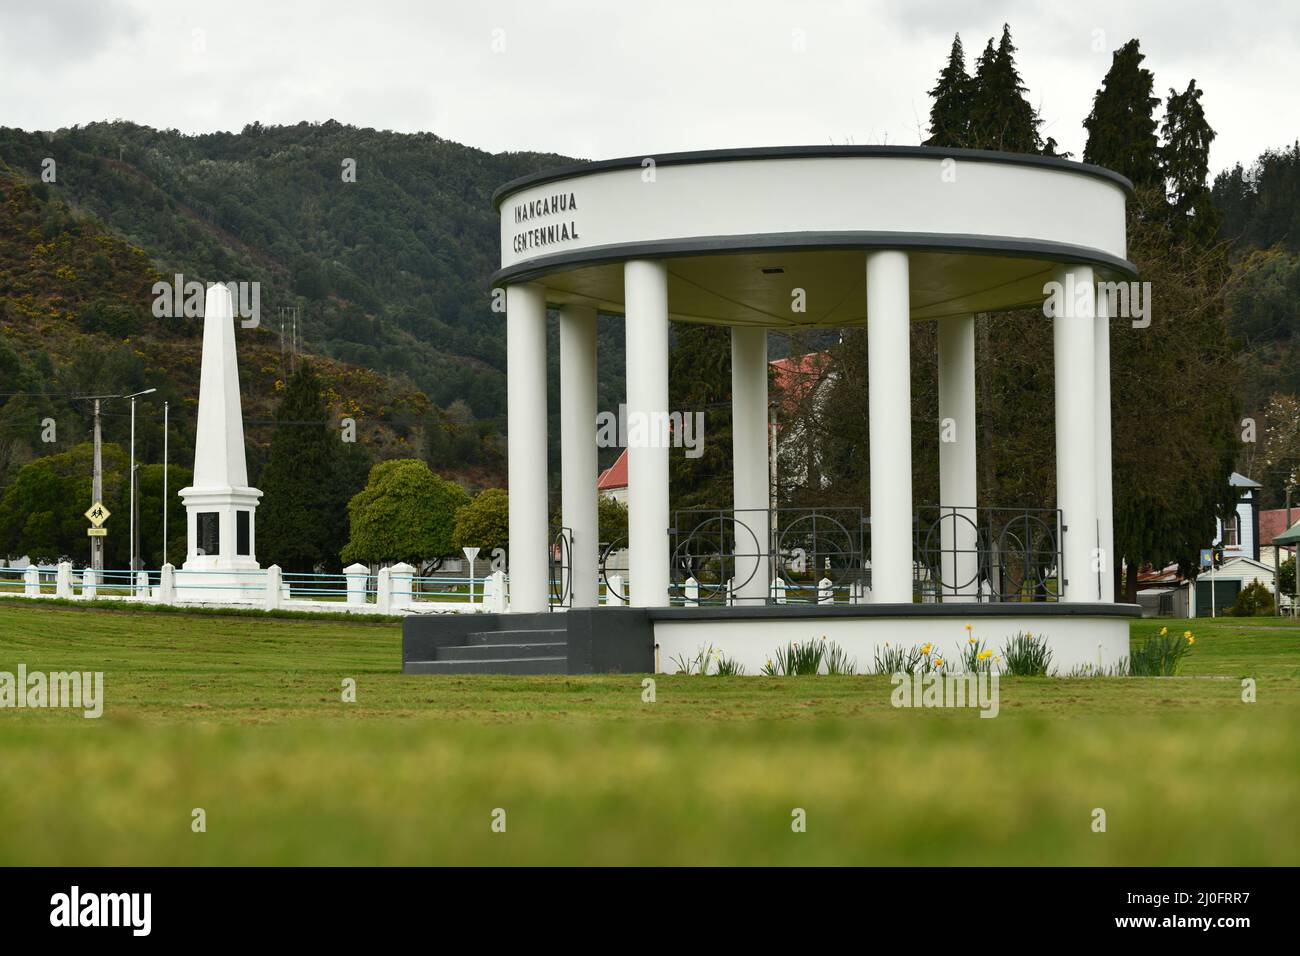 REEFTON, NOUVELLE-ZÉLANDE, 6 SEPTEMBRE 2021 : la bande historique rotonde et le mémorial de guerre à Reefton, Nouvelle-Zélande, 6 septembre 2021 Banque D'Images